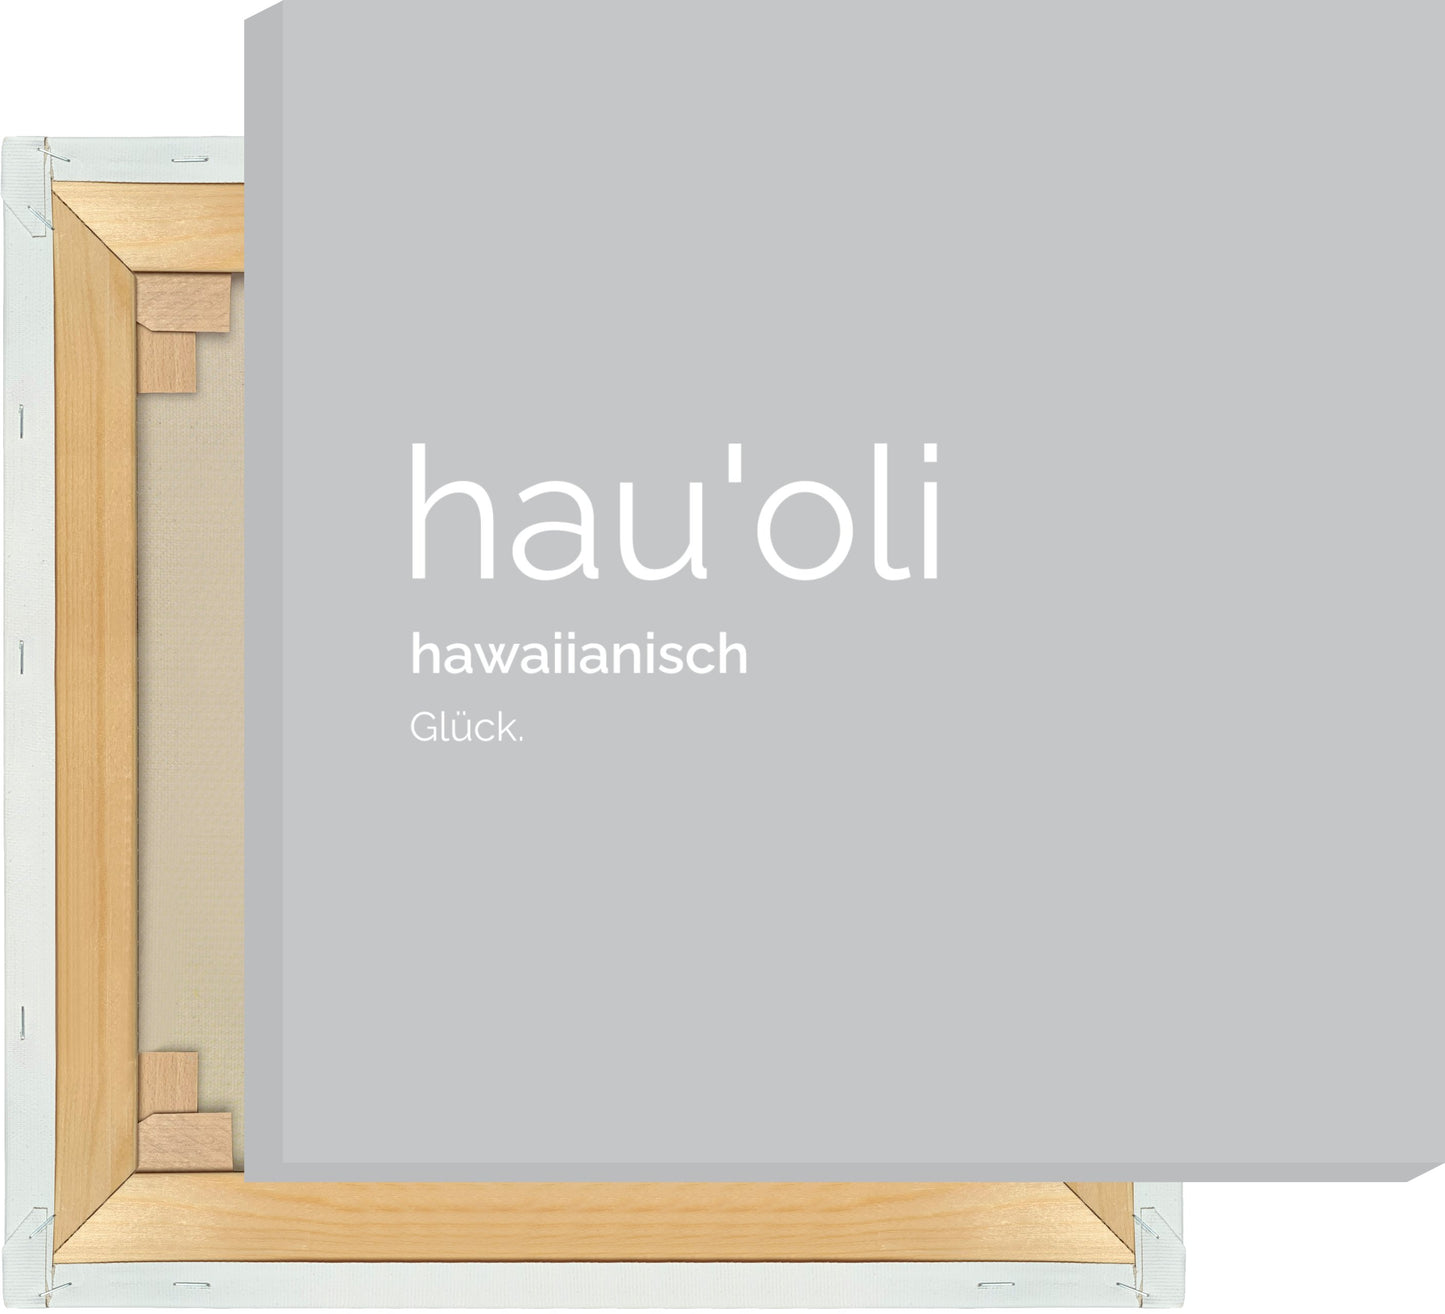 Leinwand Hauoli (Hawaiianisch: Glück)